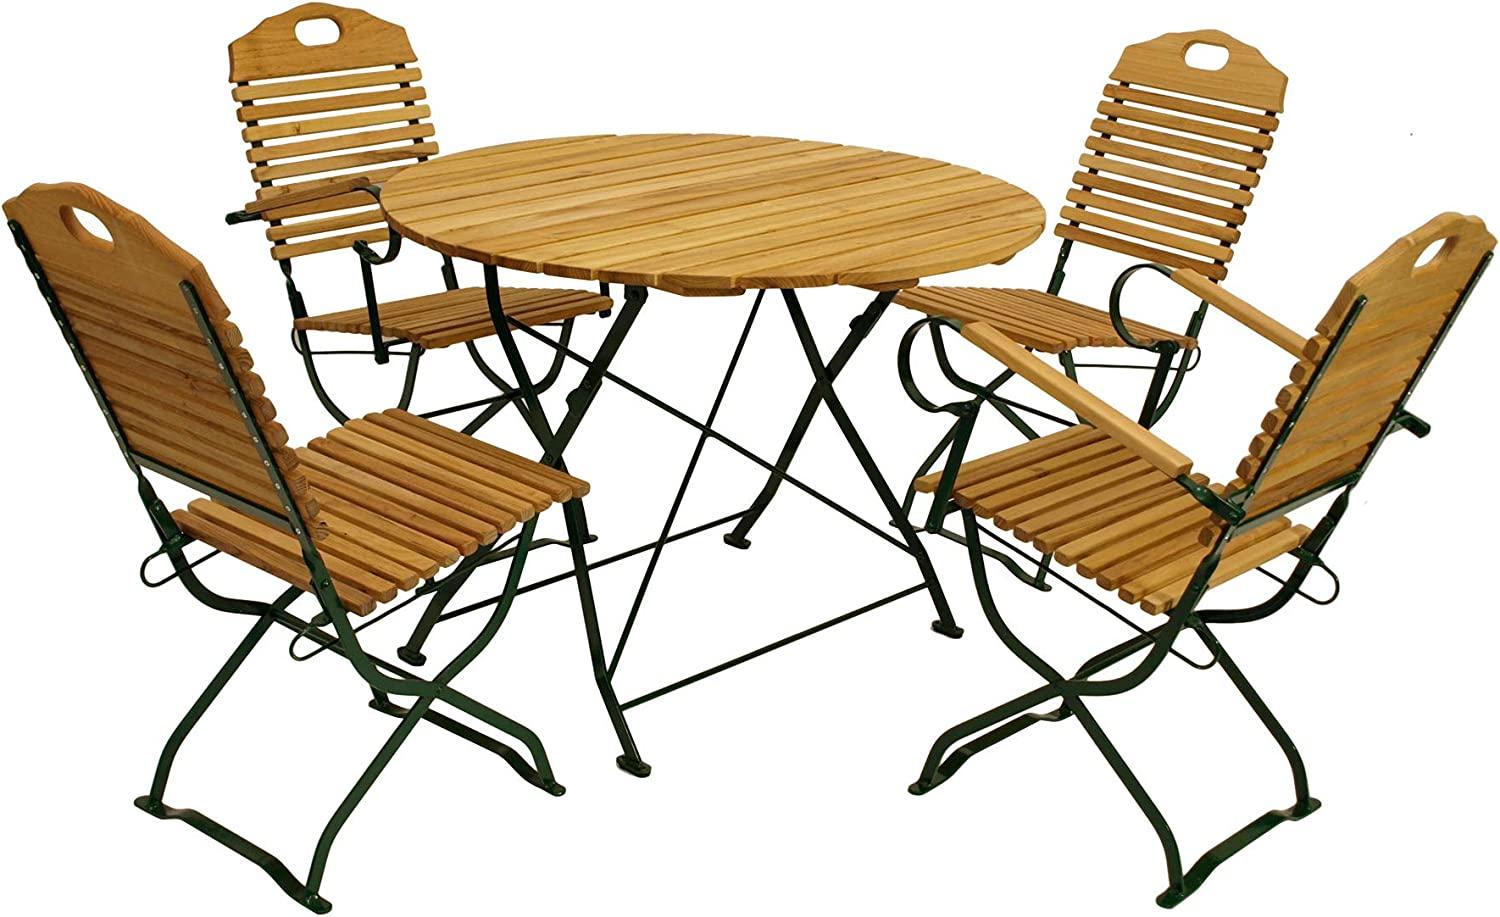 Kurgarten - Garnitur BAD TÖLZ 5-teilig (2x Stuhl, 2x Armlehnensessel, 1x Tisch 100cm rund), Flachstahl grün + Robinie, klappbar Bild 1